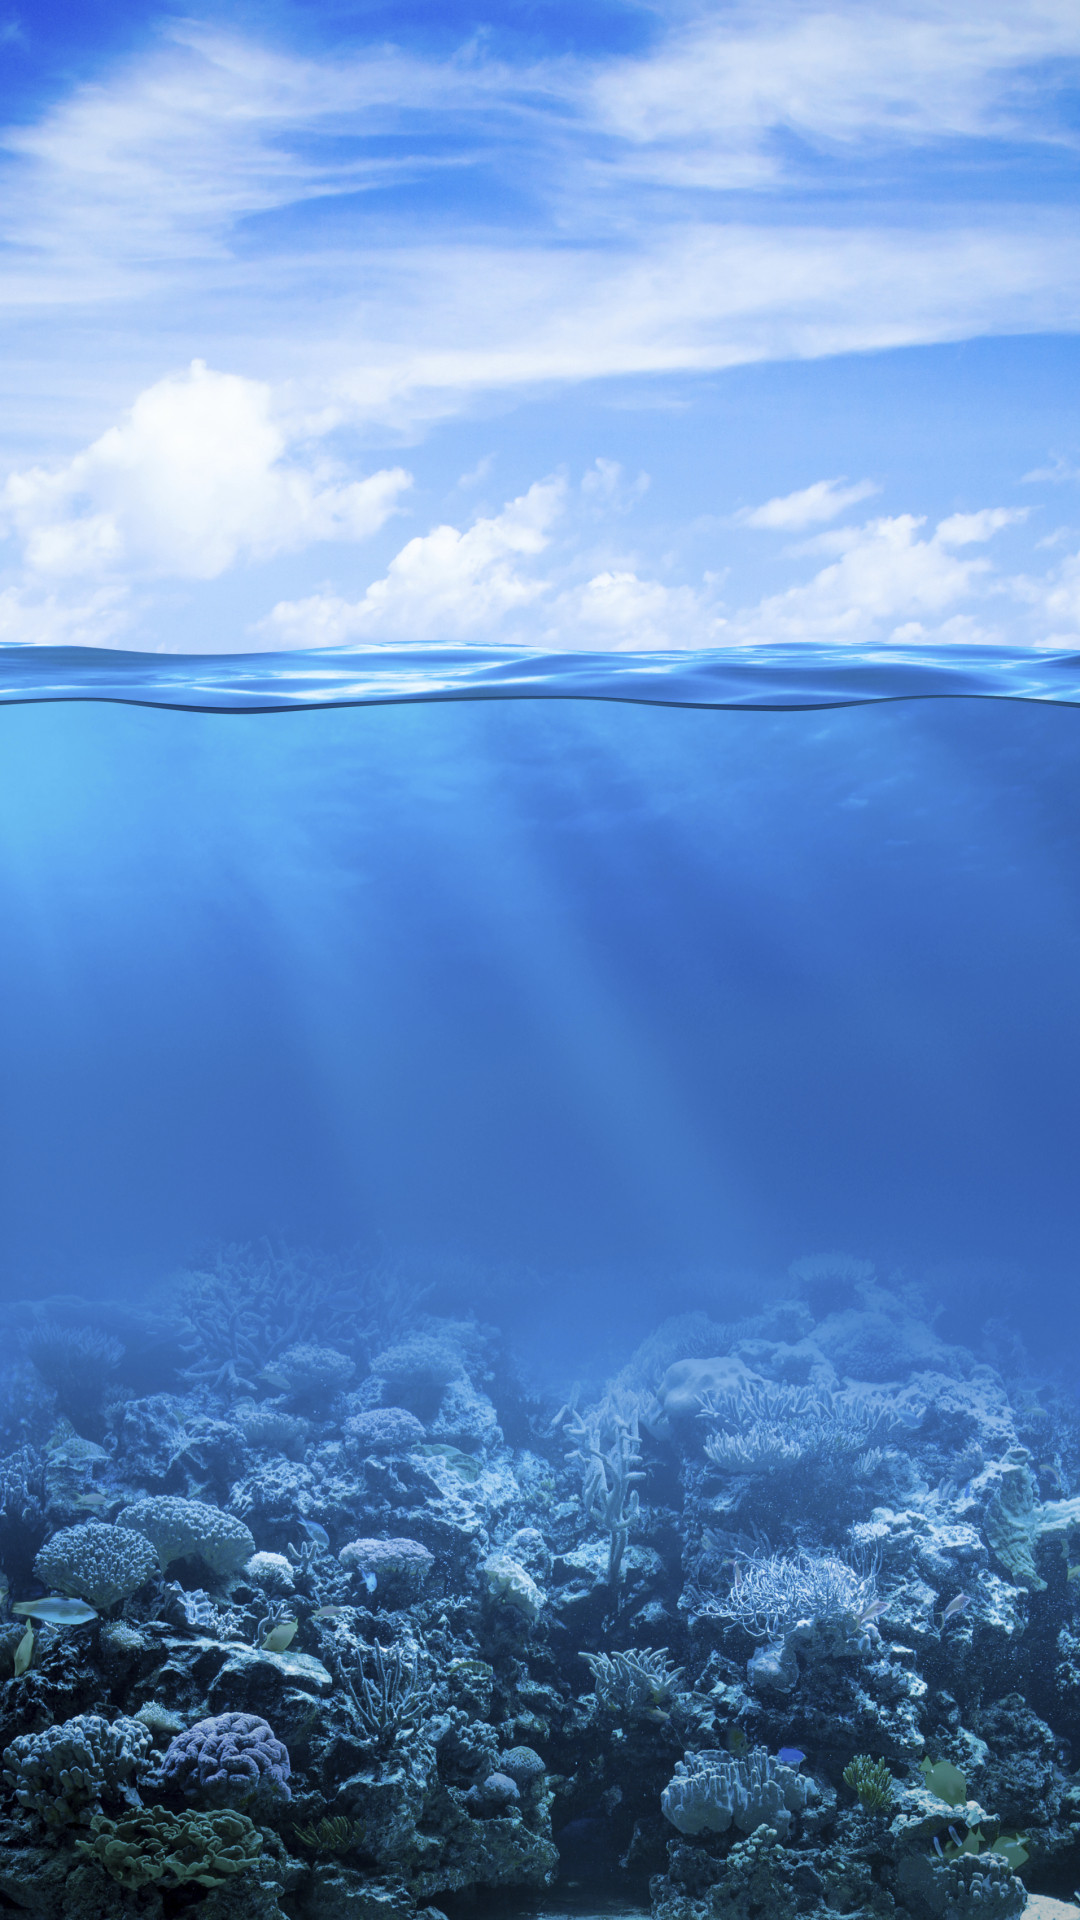 Hình nền biển cả xanh lơ mang đến năng lượng điện thoại